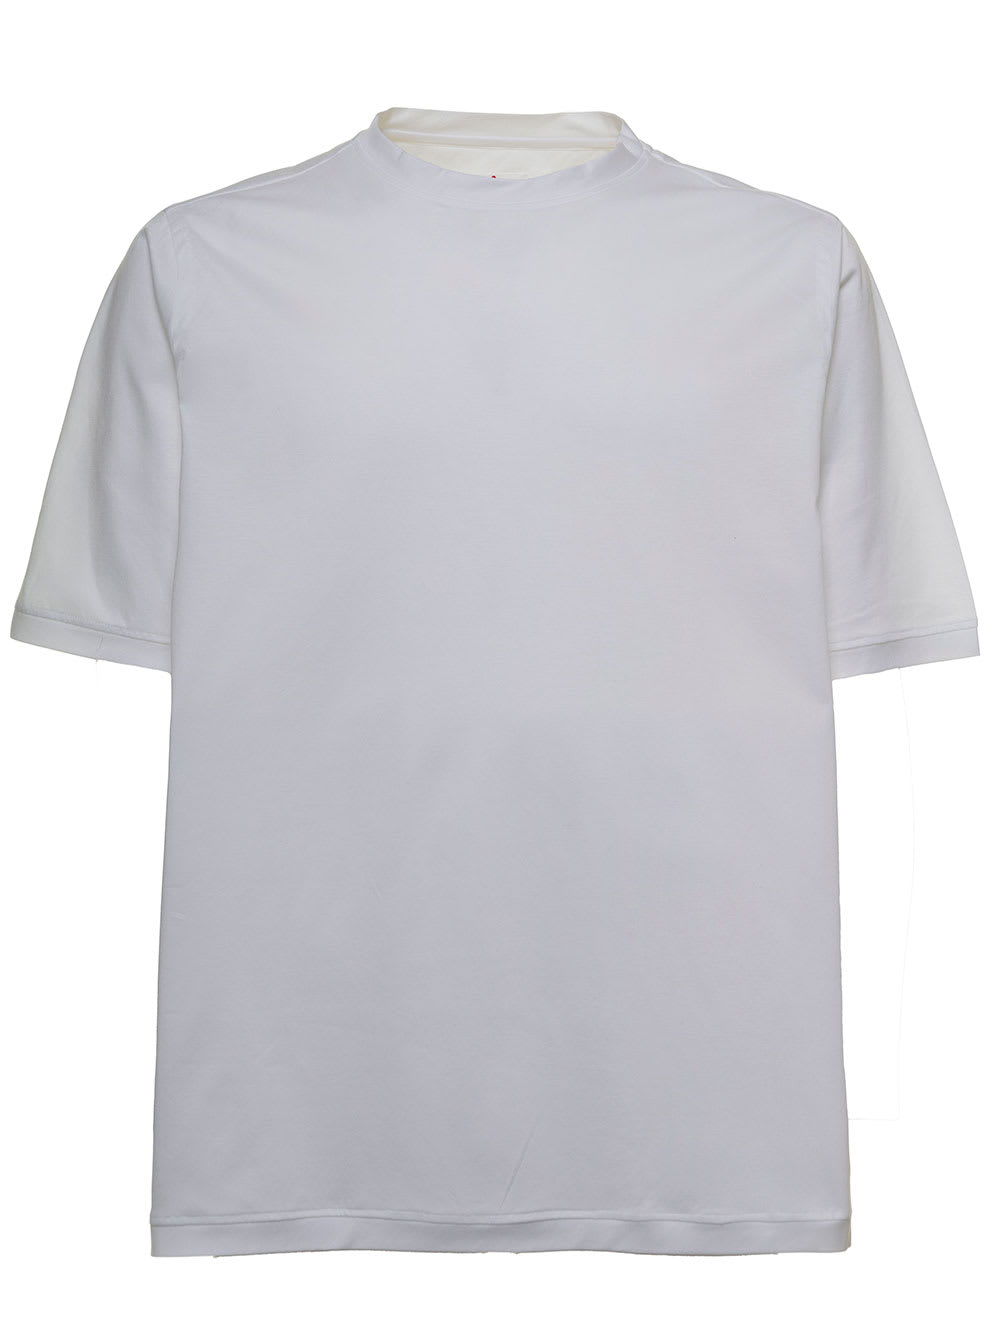 Kiton White Cotton Crew Neck T-shirt